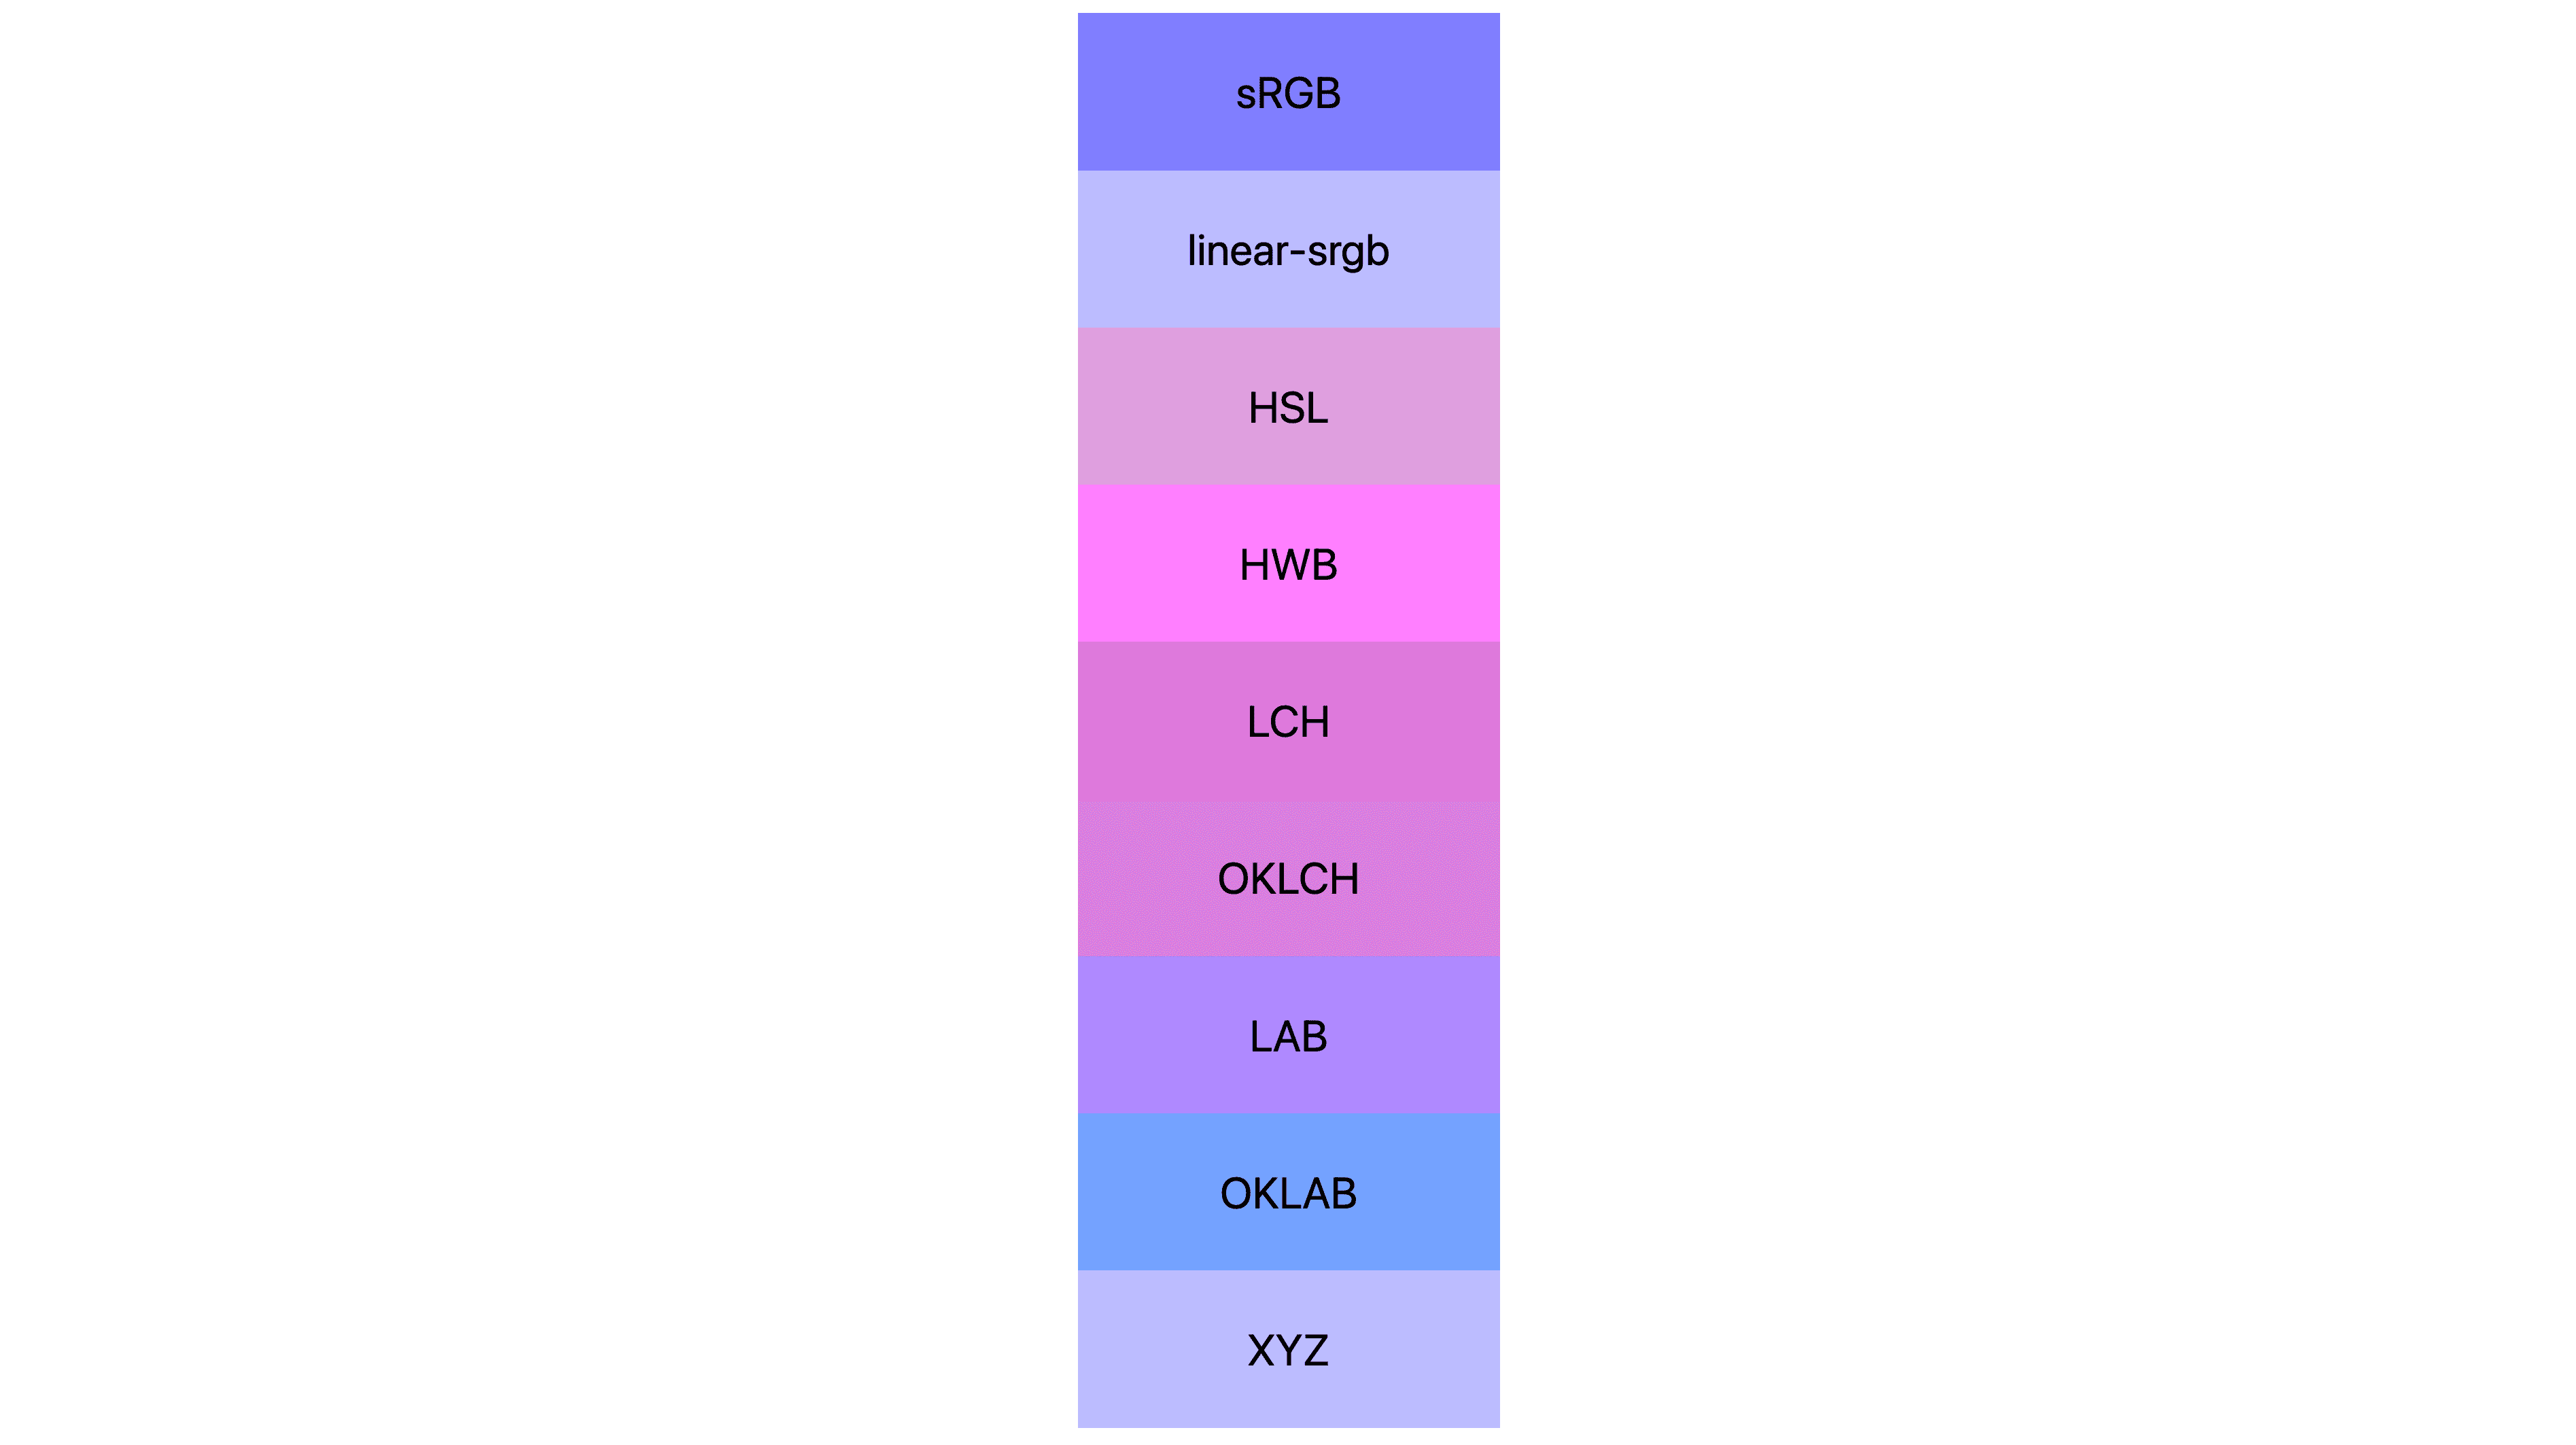 7 kleurruimten (srgb, lineair-srgb, lch, oklch, lab, oklab, xyz), elk weergegeven met verschillende resultaten. Velen zijn roze of paars, weinigen zijn eigenlijk nog blauw.